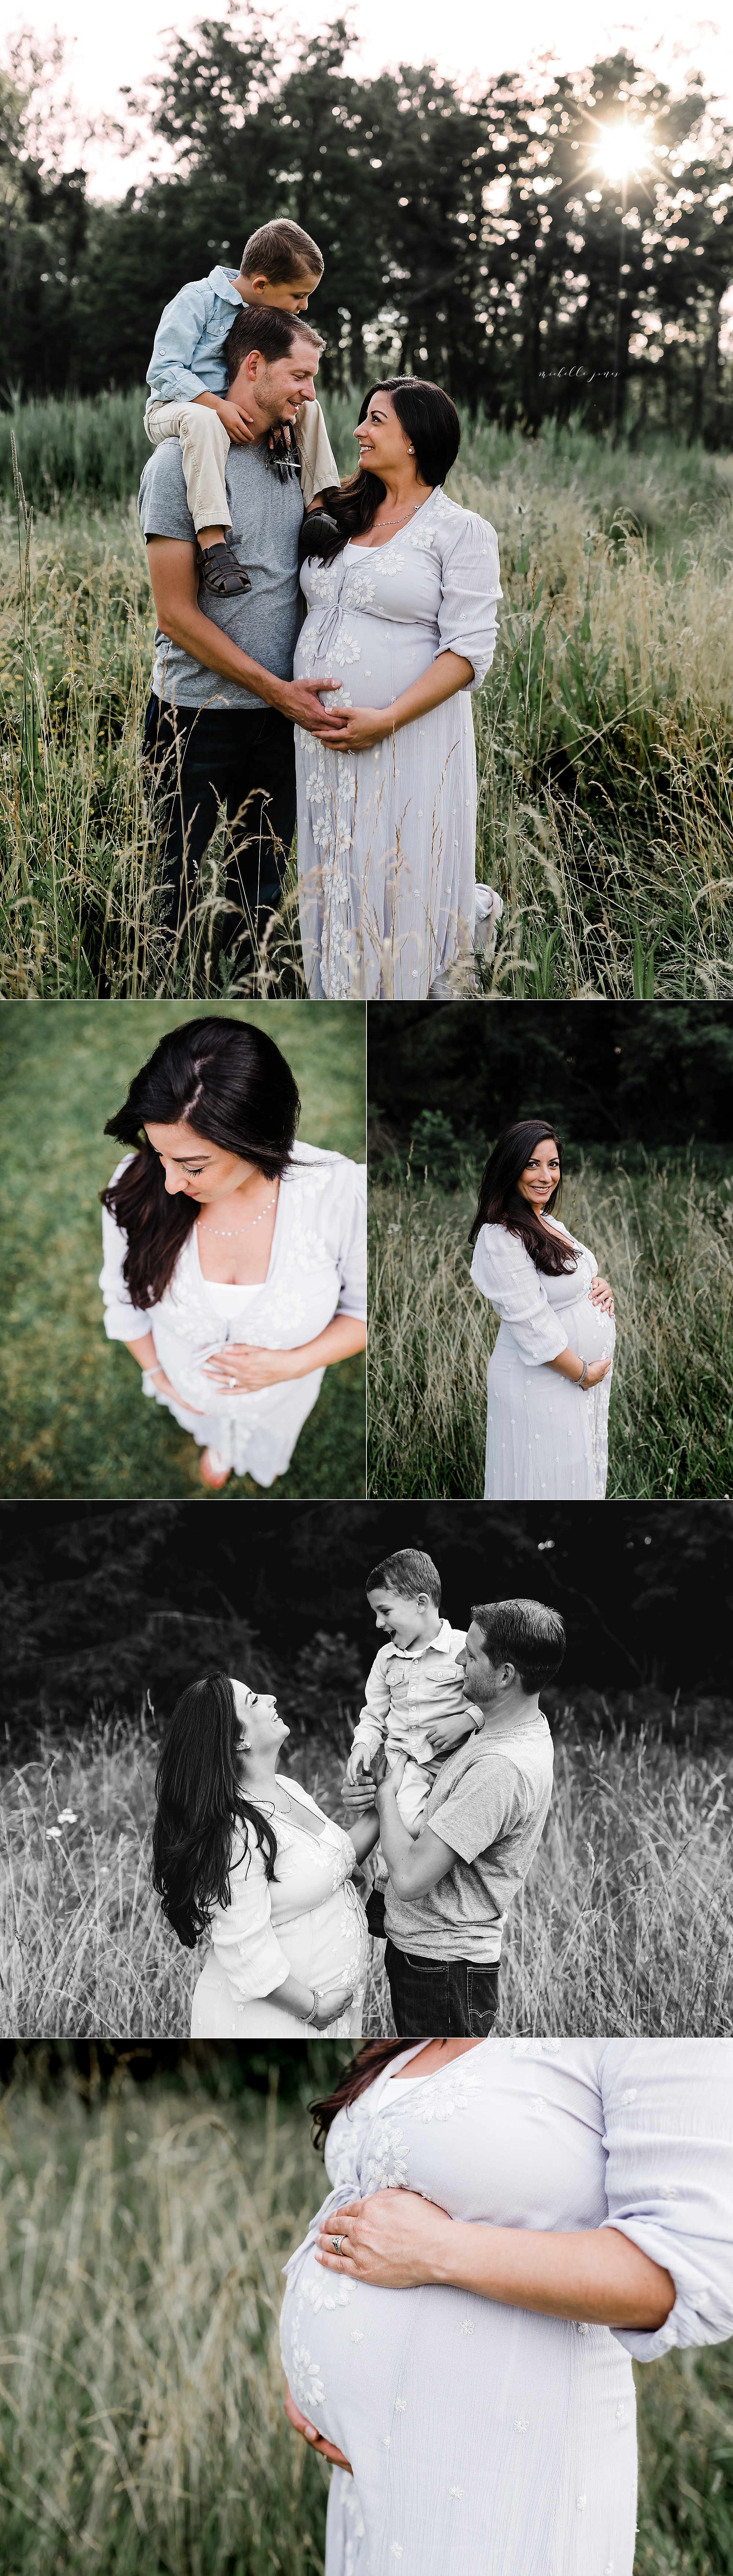 Cleveland Maternity Photographer 